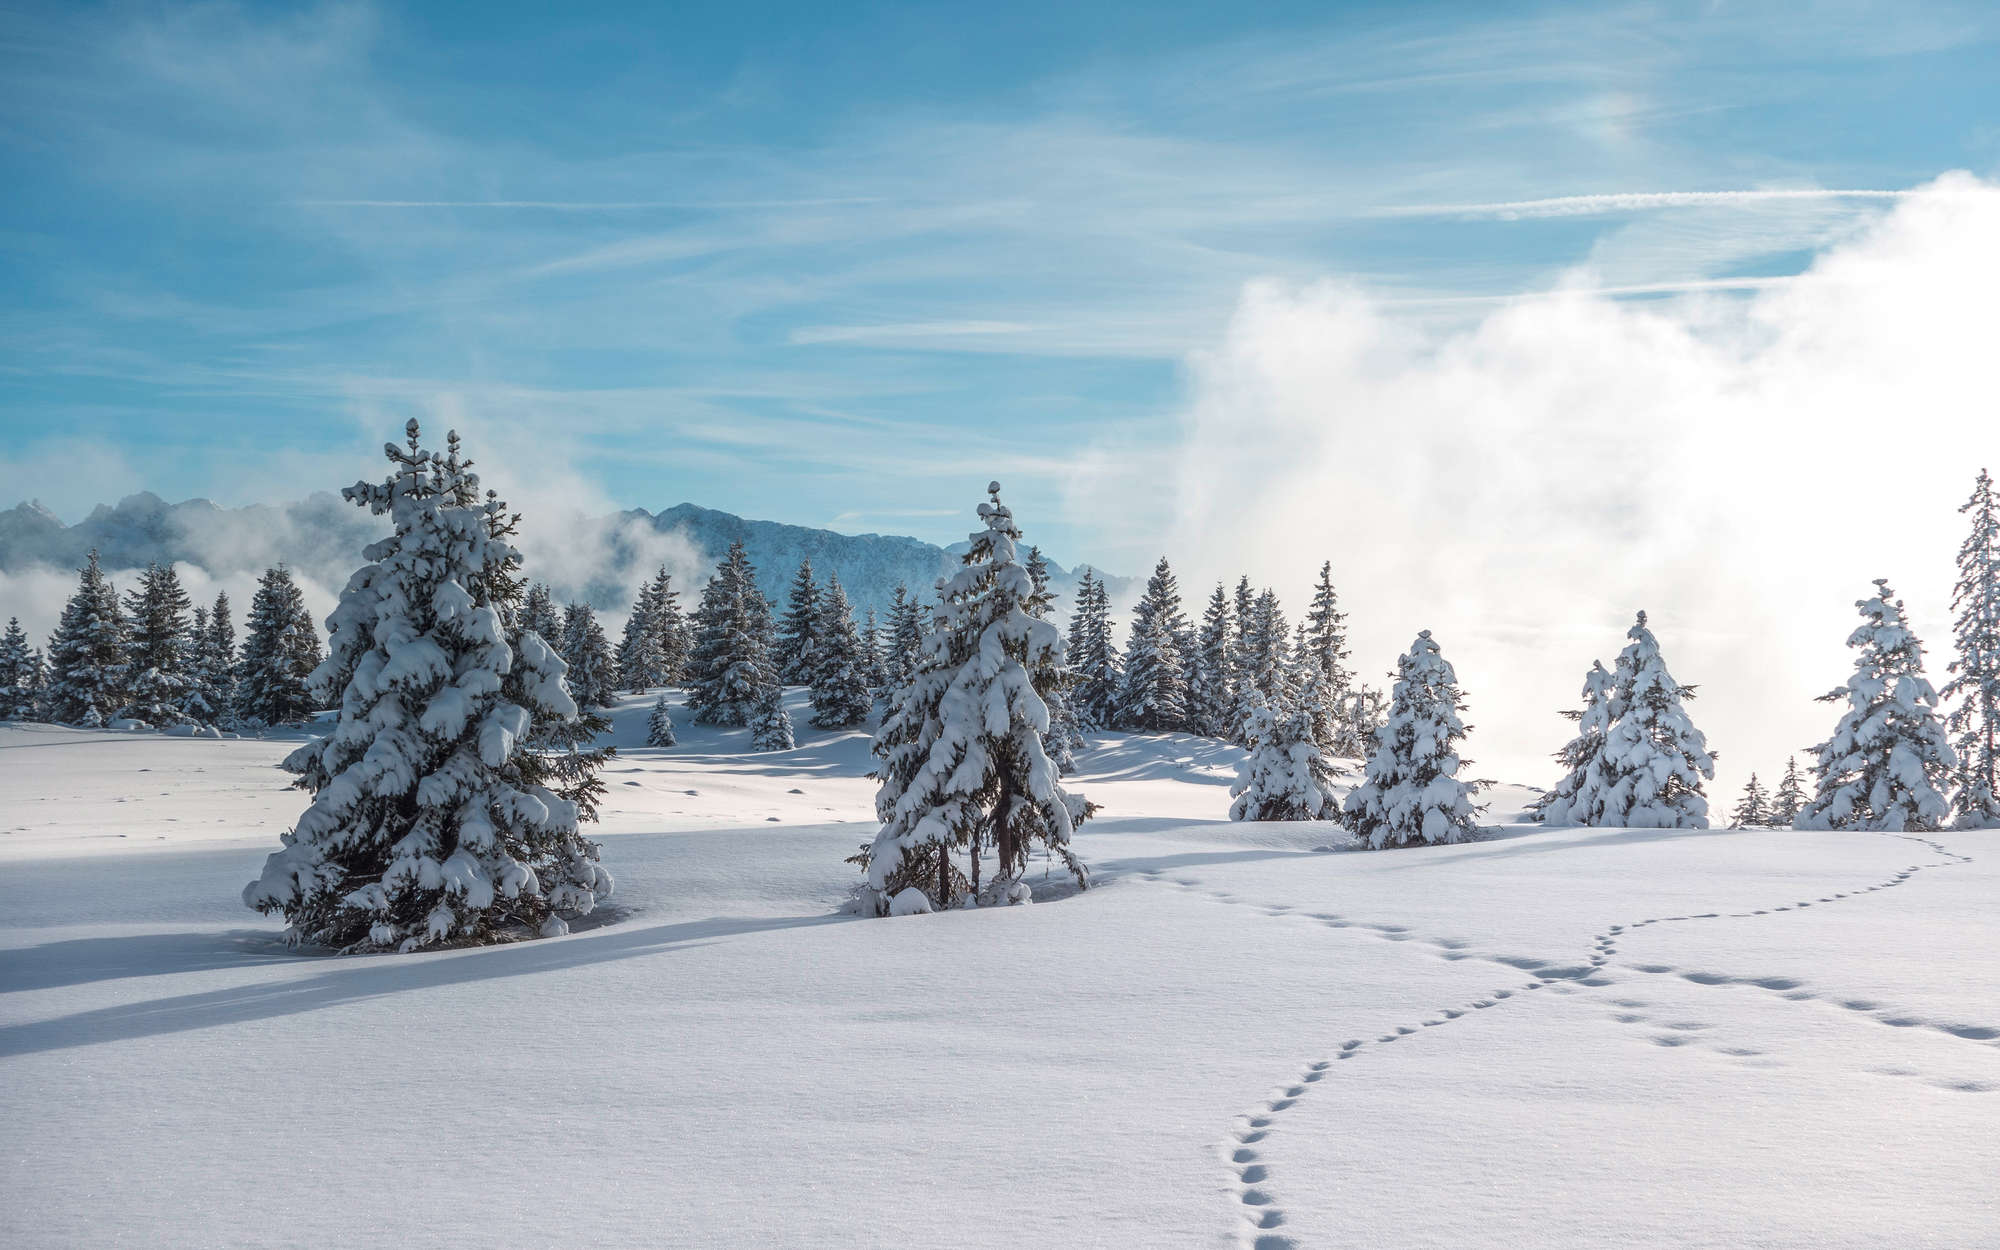             Digital behang Sneeuw en voetafdrukken in het winterse bos - Premium glad fleece
        